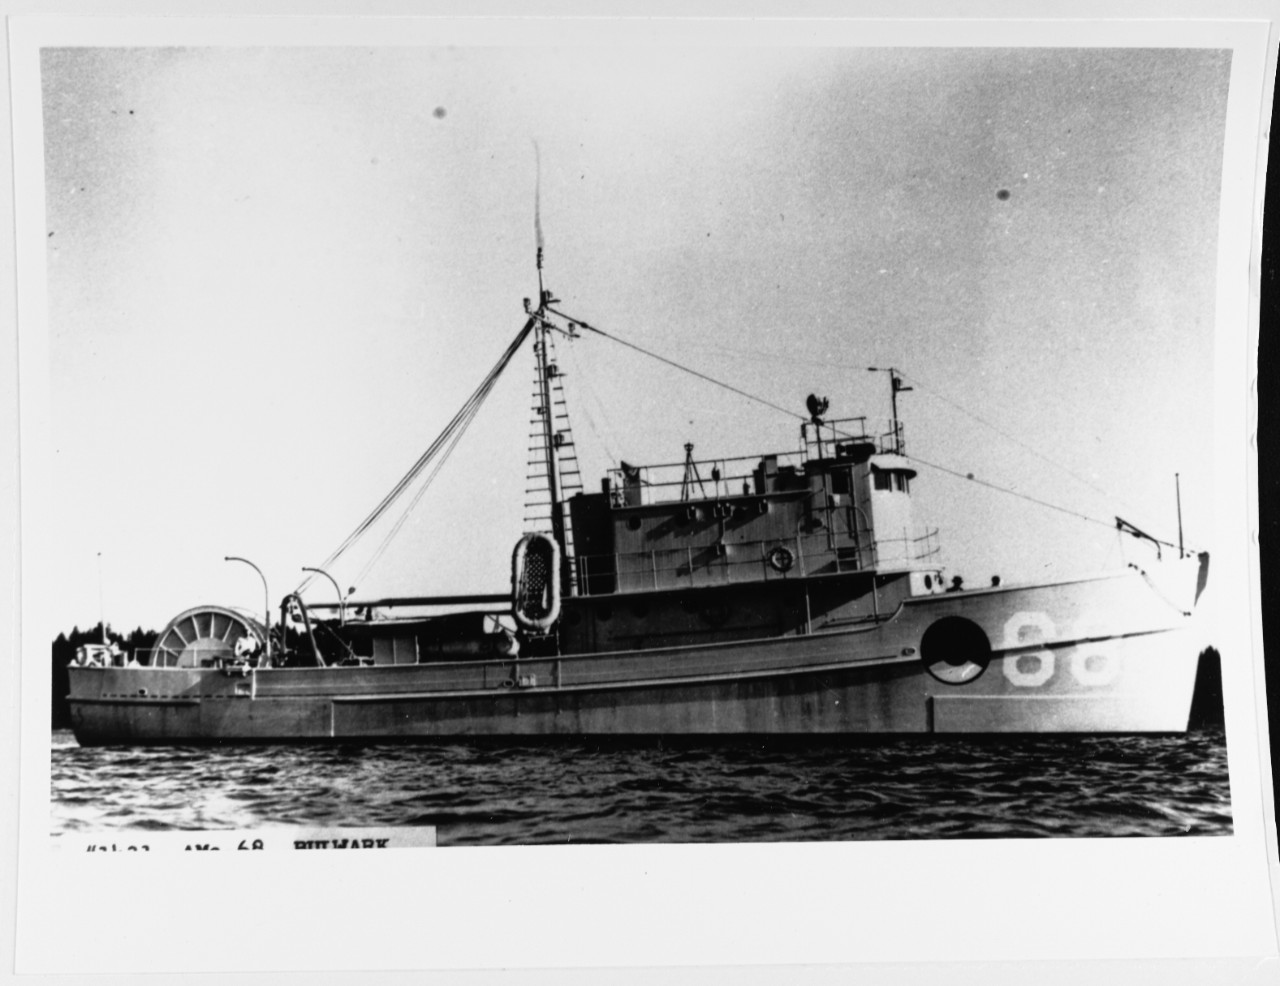 USS BULWARK (AMc-68)